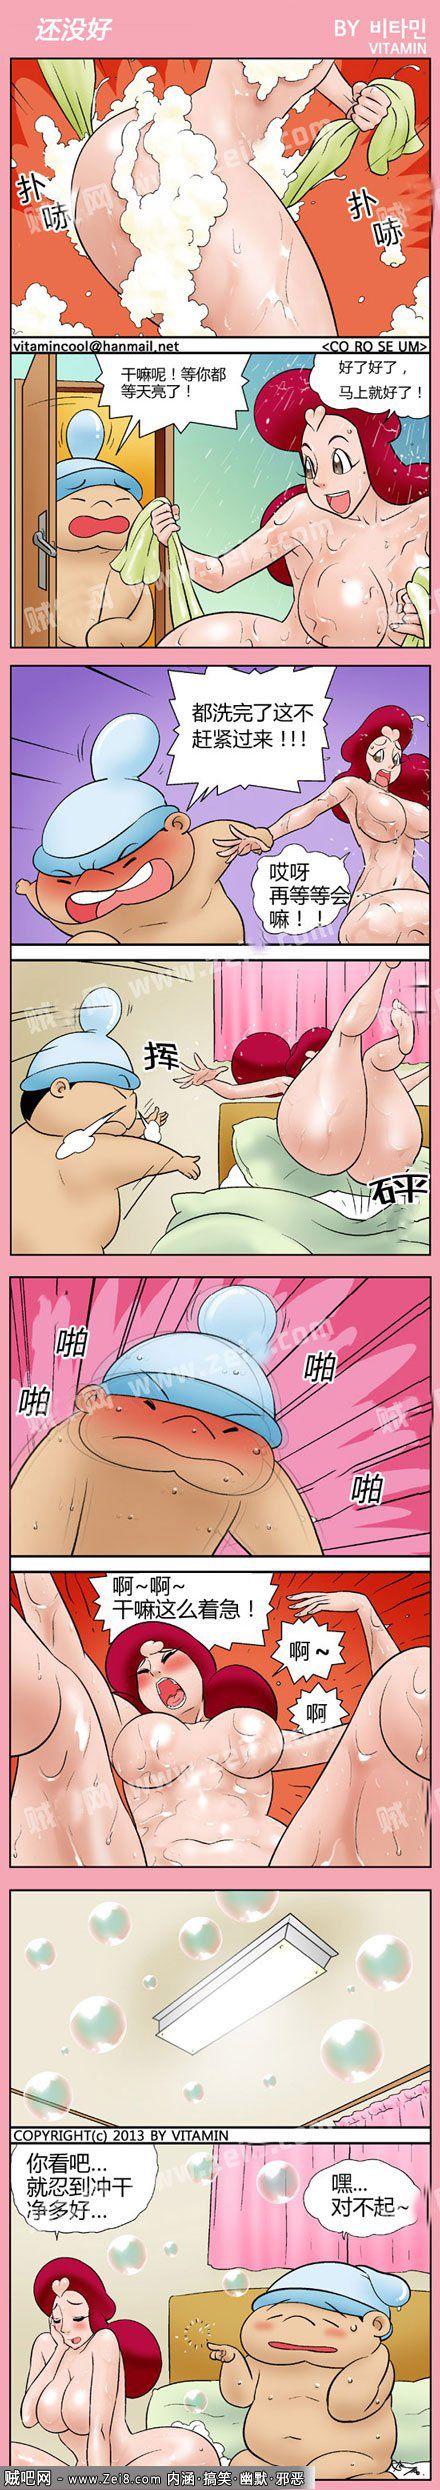 【色系邪恶漫画系列】心急吃不了热豆腐